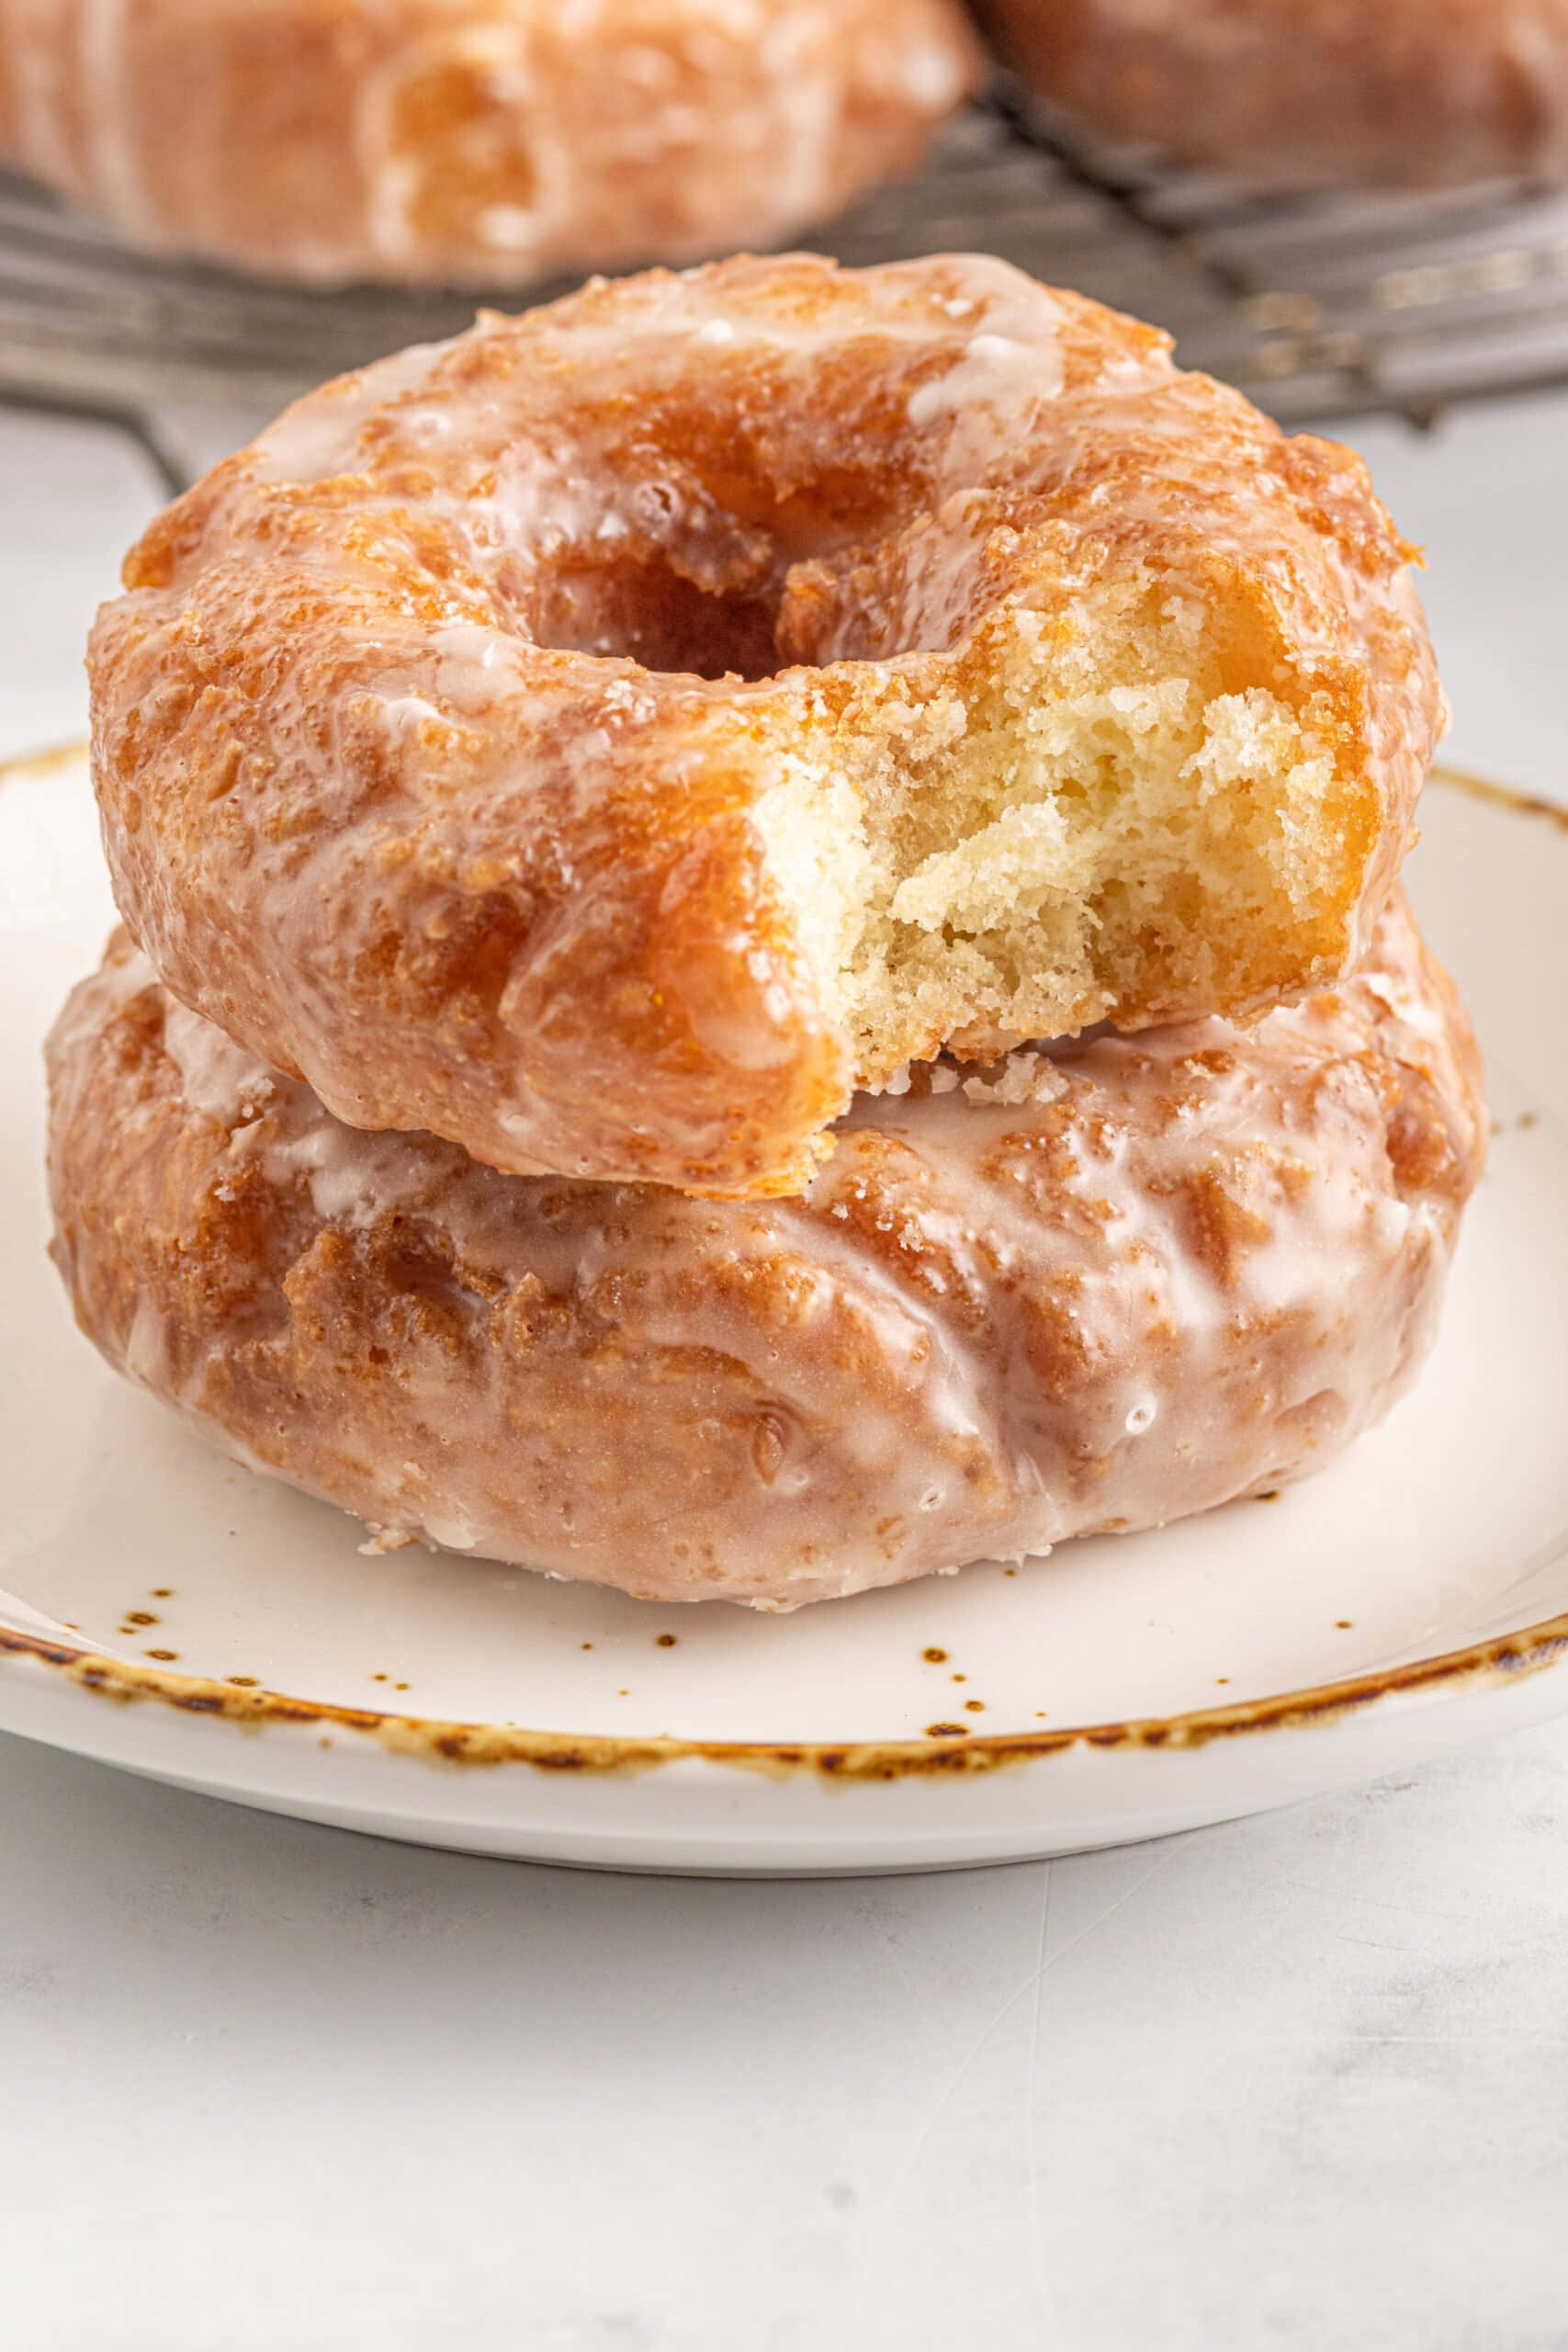 Enjoy a sweet glazed donut. Wallpaper